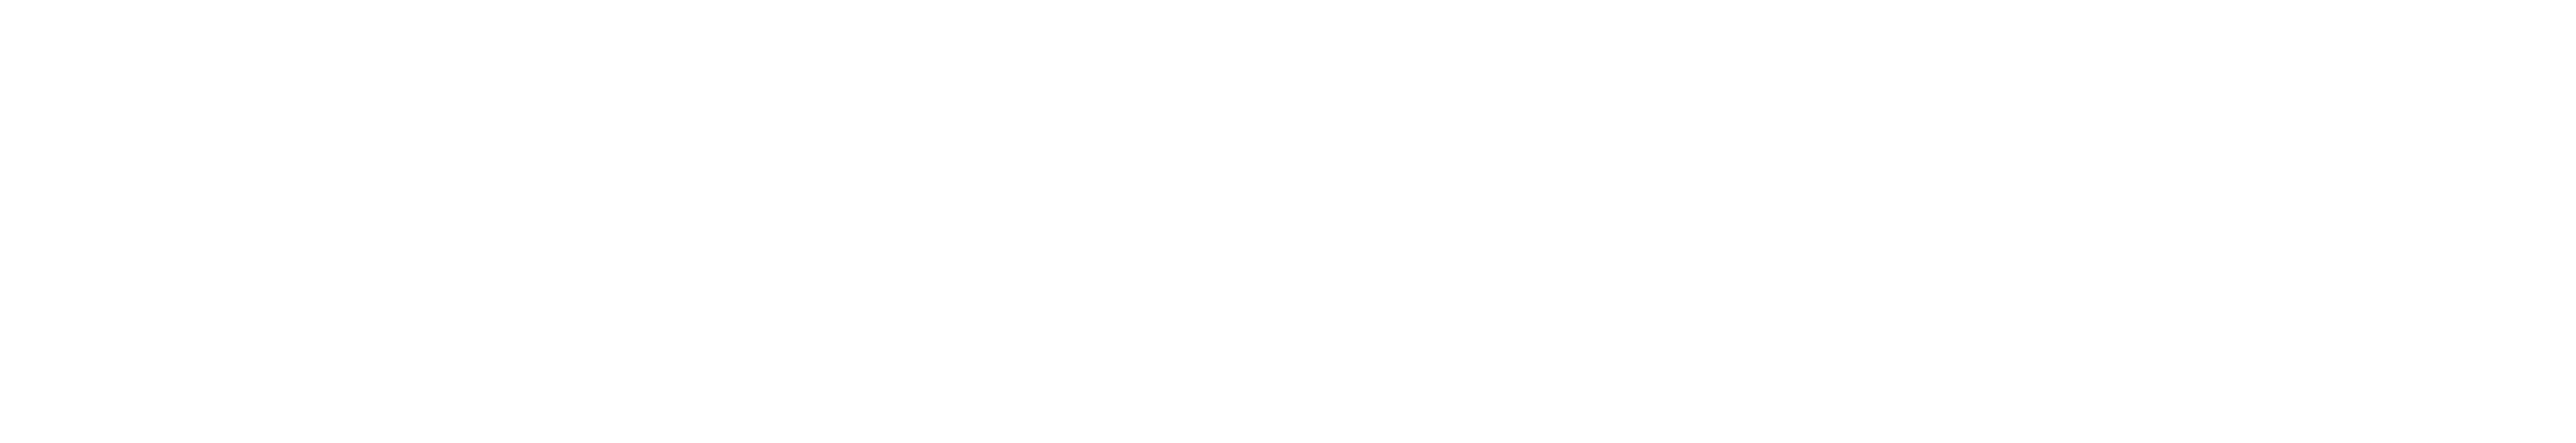 fhp-logo_20221203 - b_a2-03